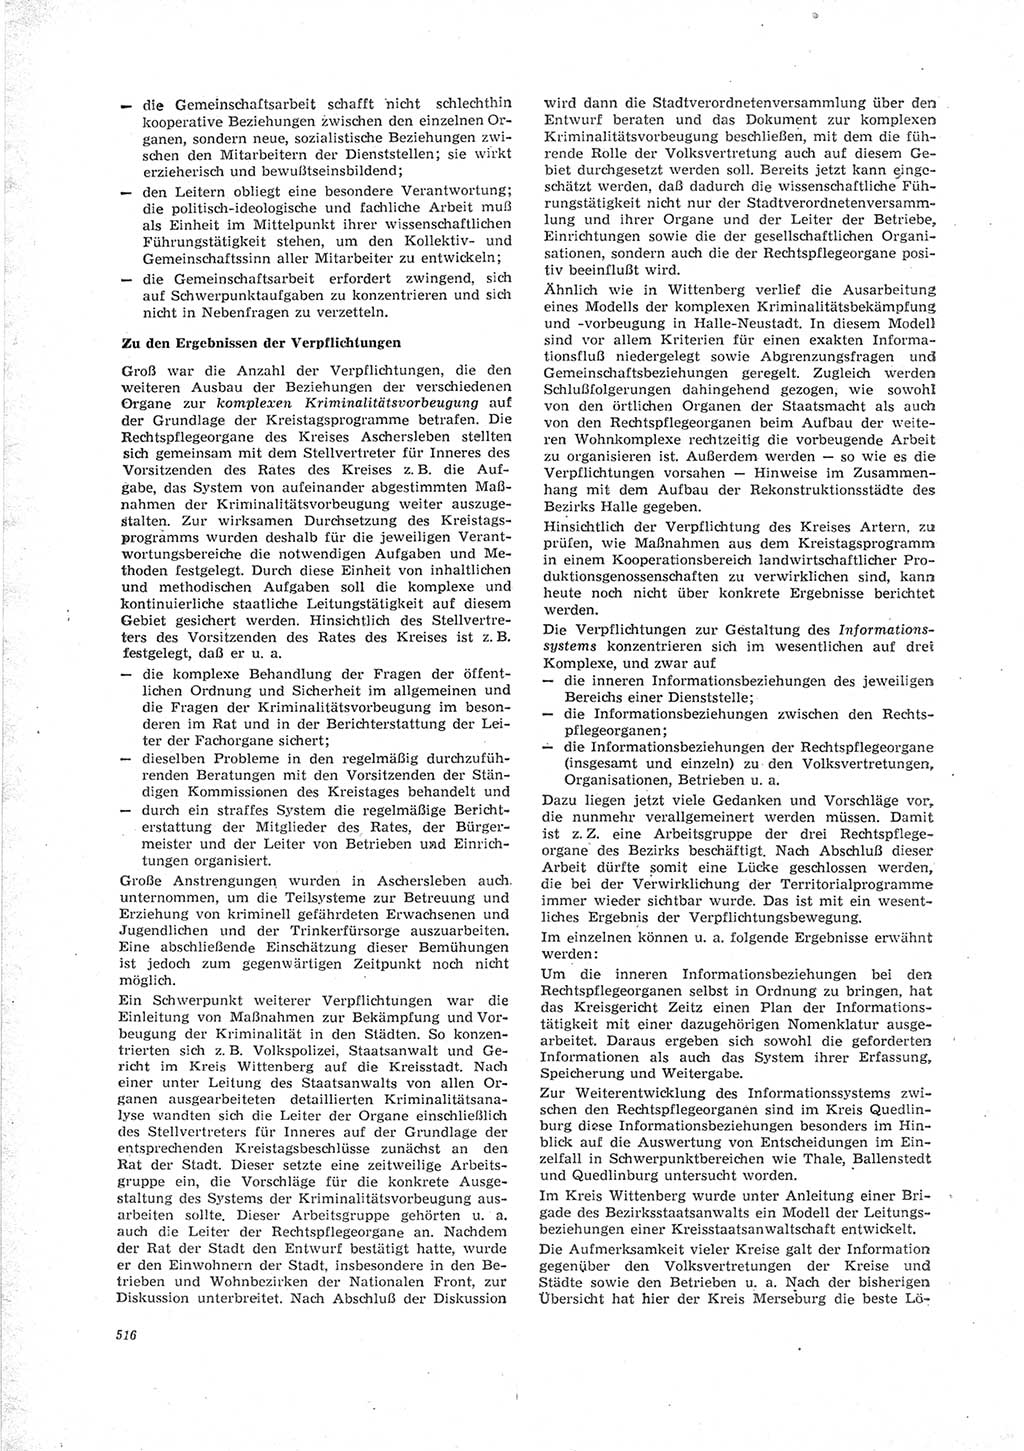 Neue Justiz (NJ), Zeitschrift für Recht und Rechtswissenschaft [Deutsche Demokratische Republik (DDR)], 23. Jahrgang 1969, Seite 516 (NJ DDR 1969, S. 516)